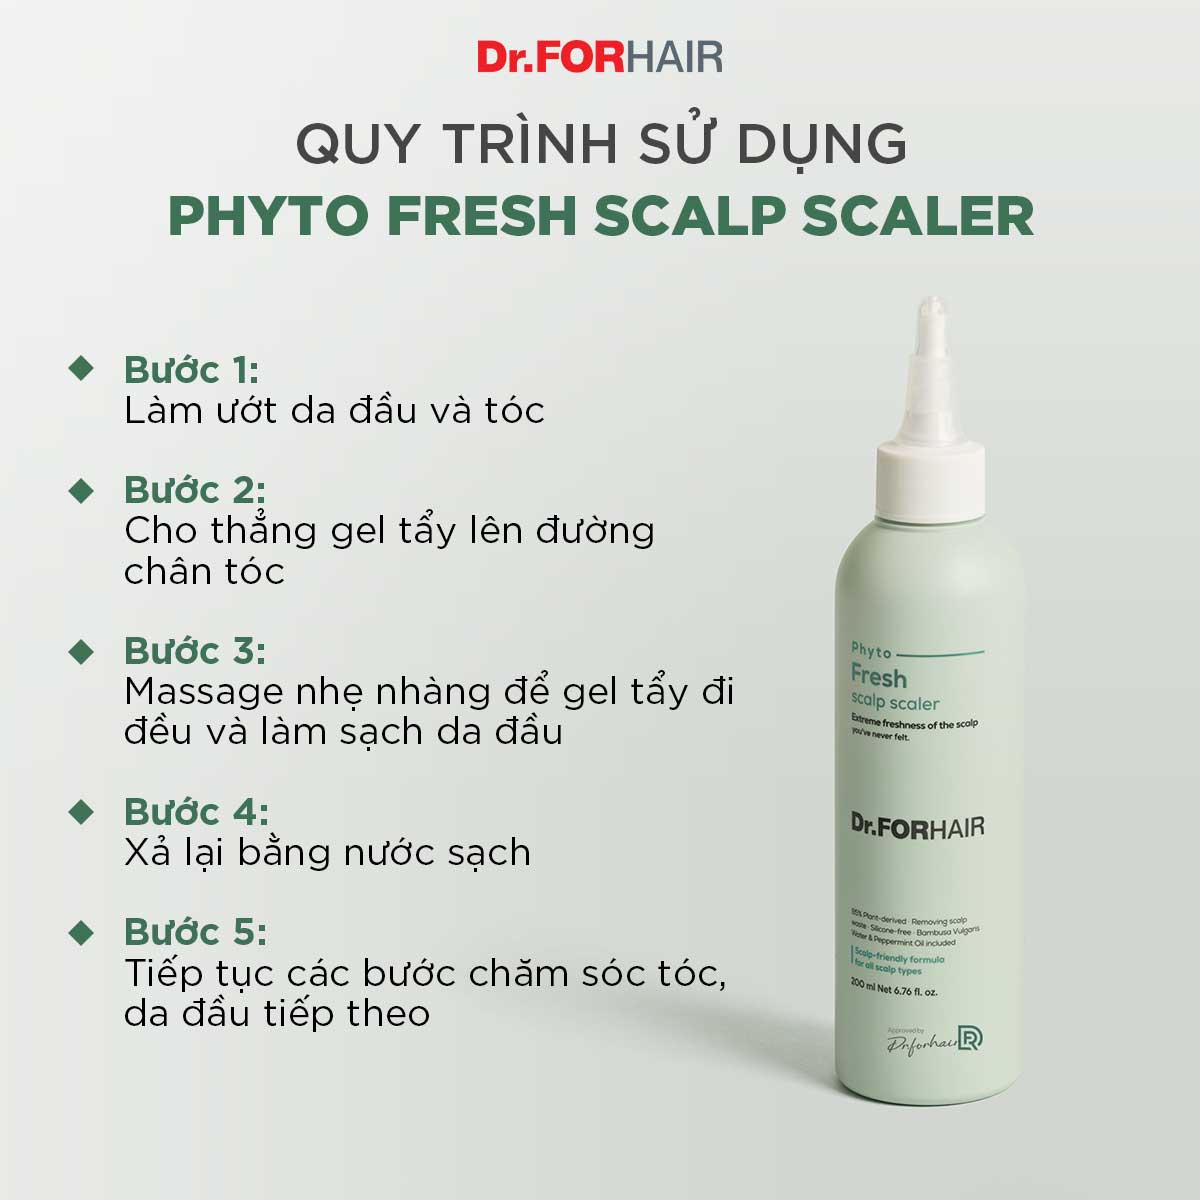 Tẩy tế bào chết cho da đầu chiết xuất thực vật giảm dầu giảm nhờn giảm mùi hôi cho da đầu Dr.FORHAIR Phyto Fresh Scalp Scaler